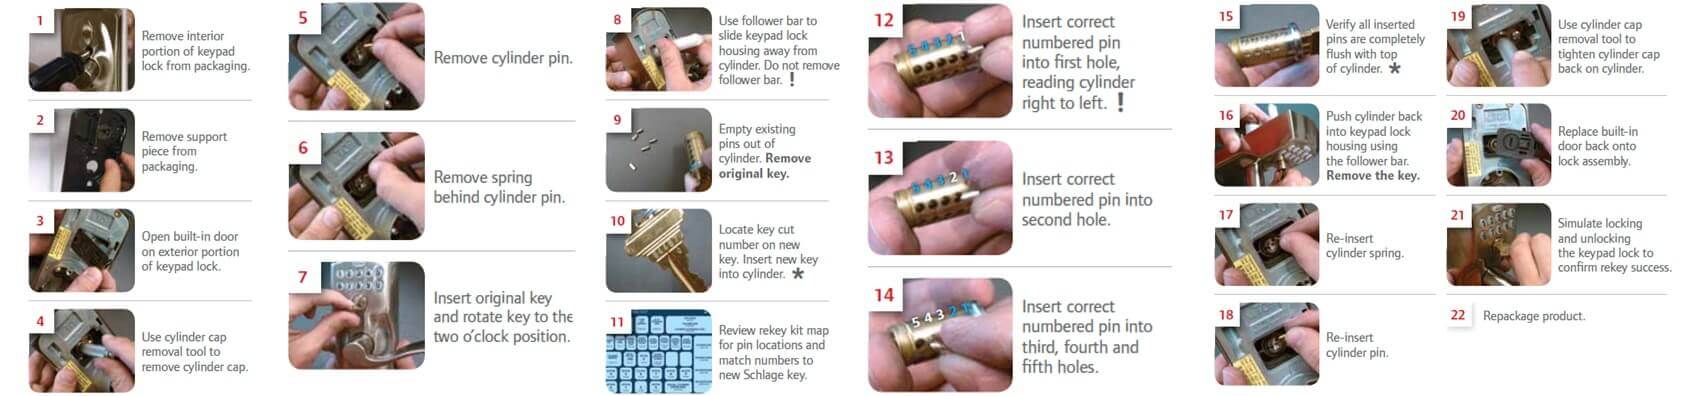 Schlage キーパッド ロックのキーをマスター キーで再設定する方法